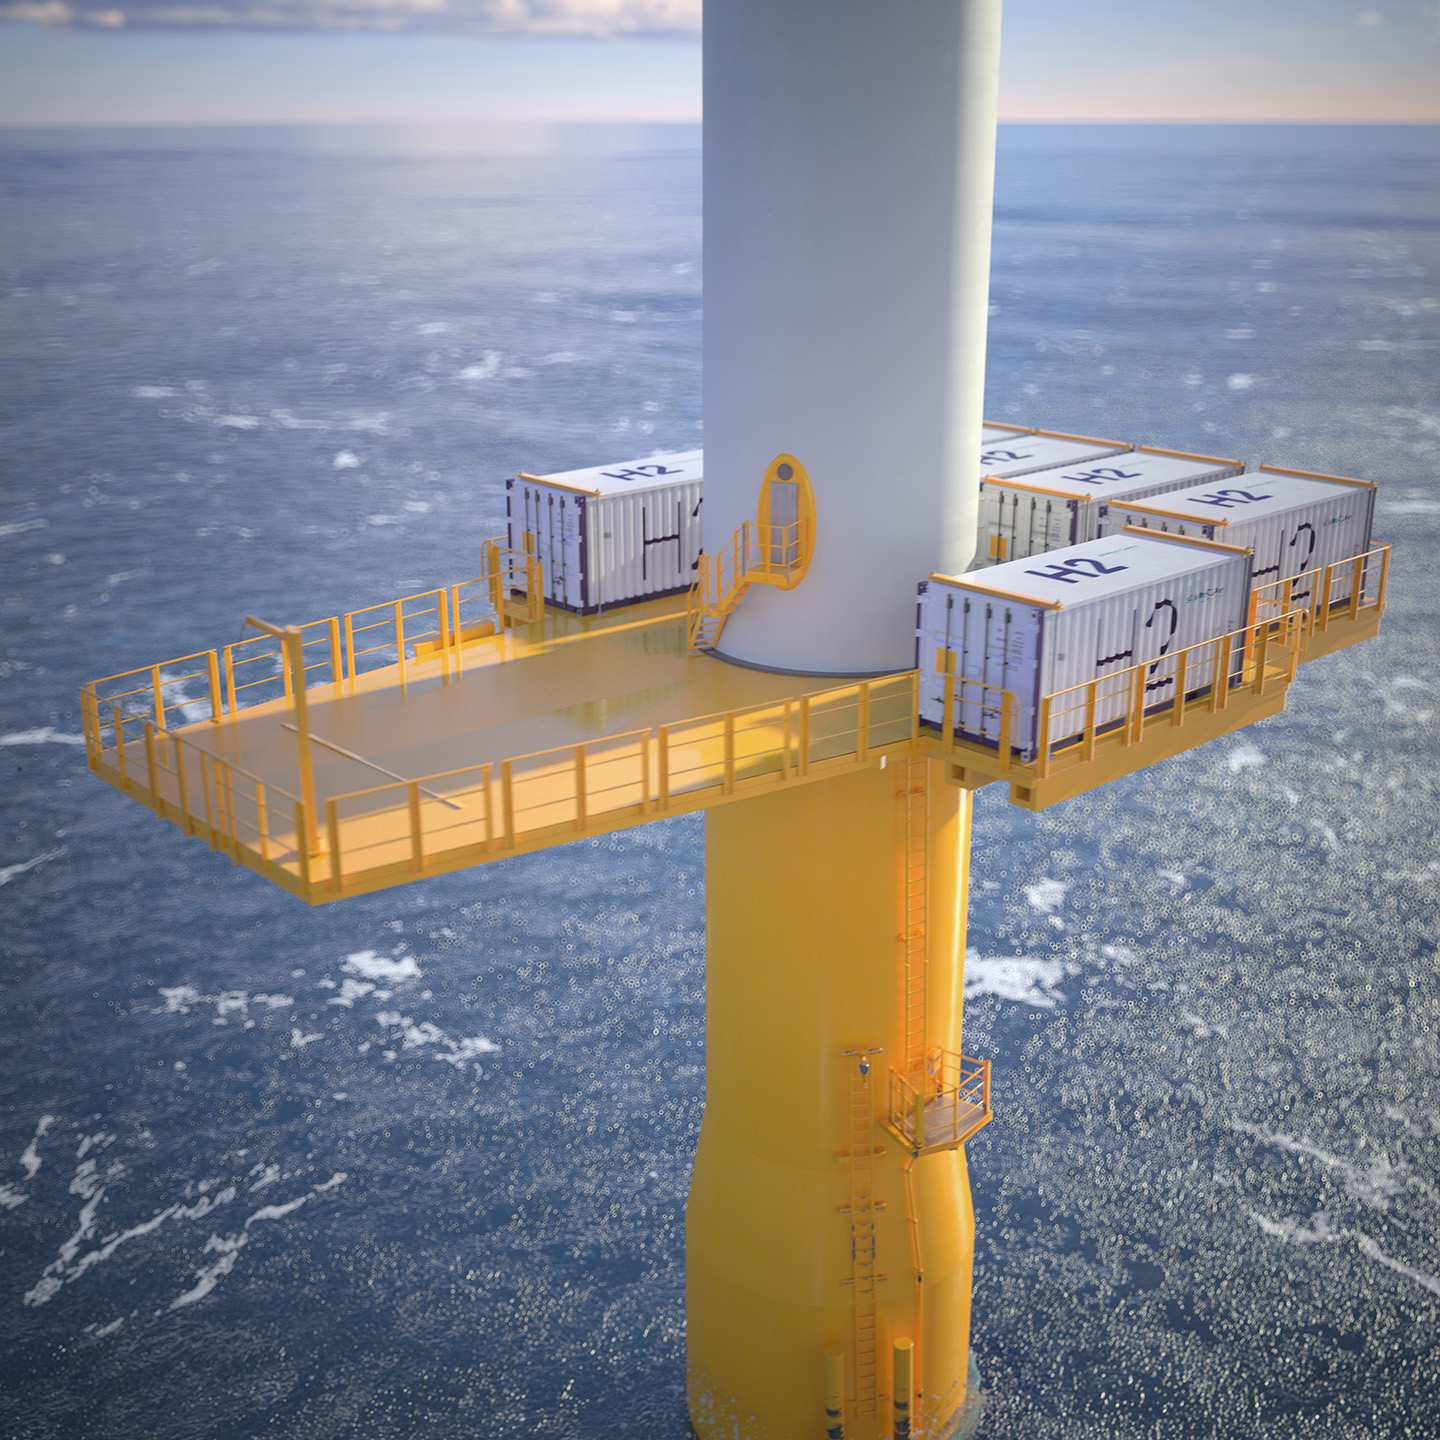 Modell der Plattform der Offshore-Windkraftanlage. Die Container enthalten die notwendige technische Infrastruktur zur Erzeugung des Wasserstoffes.